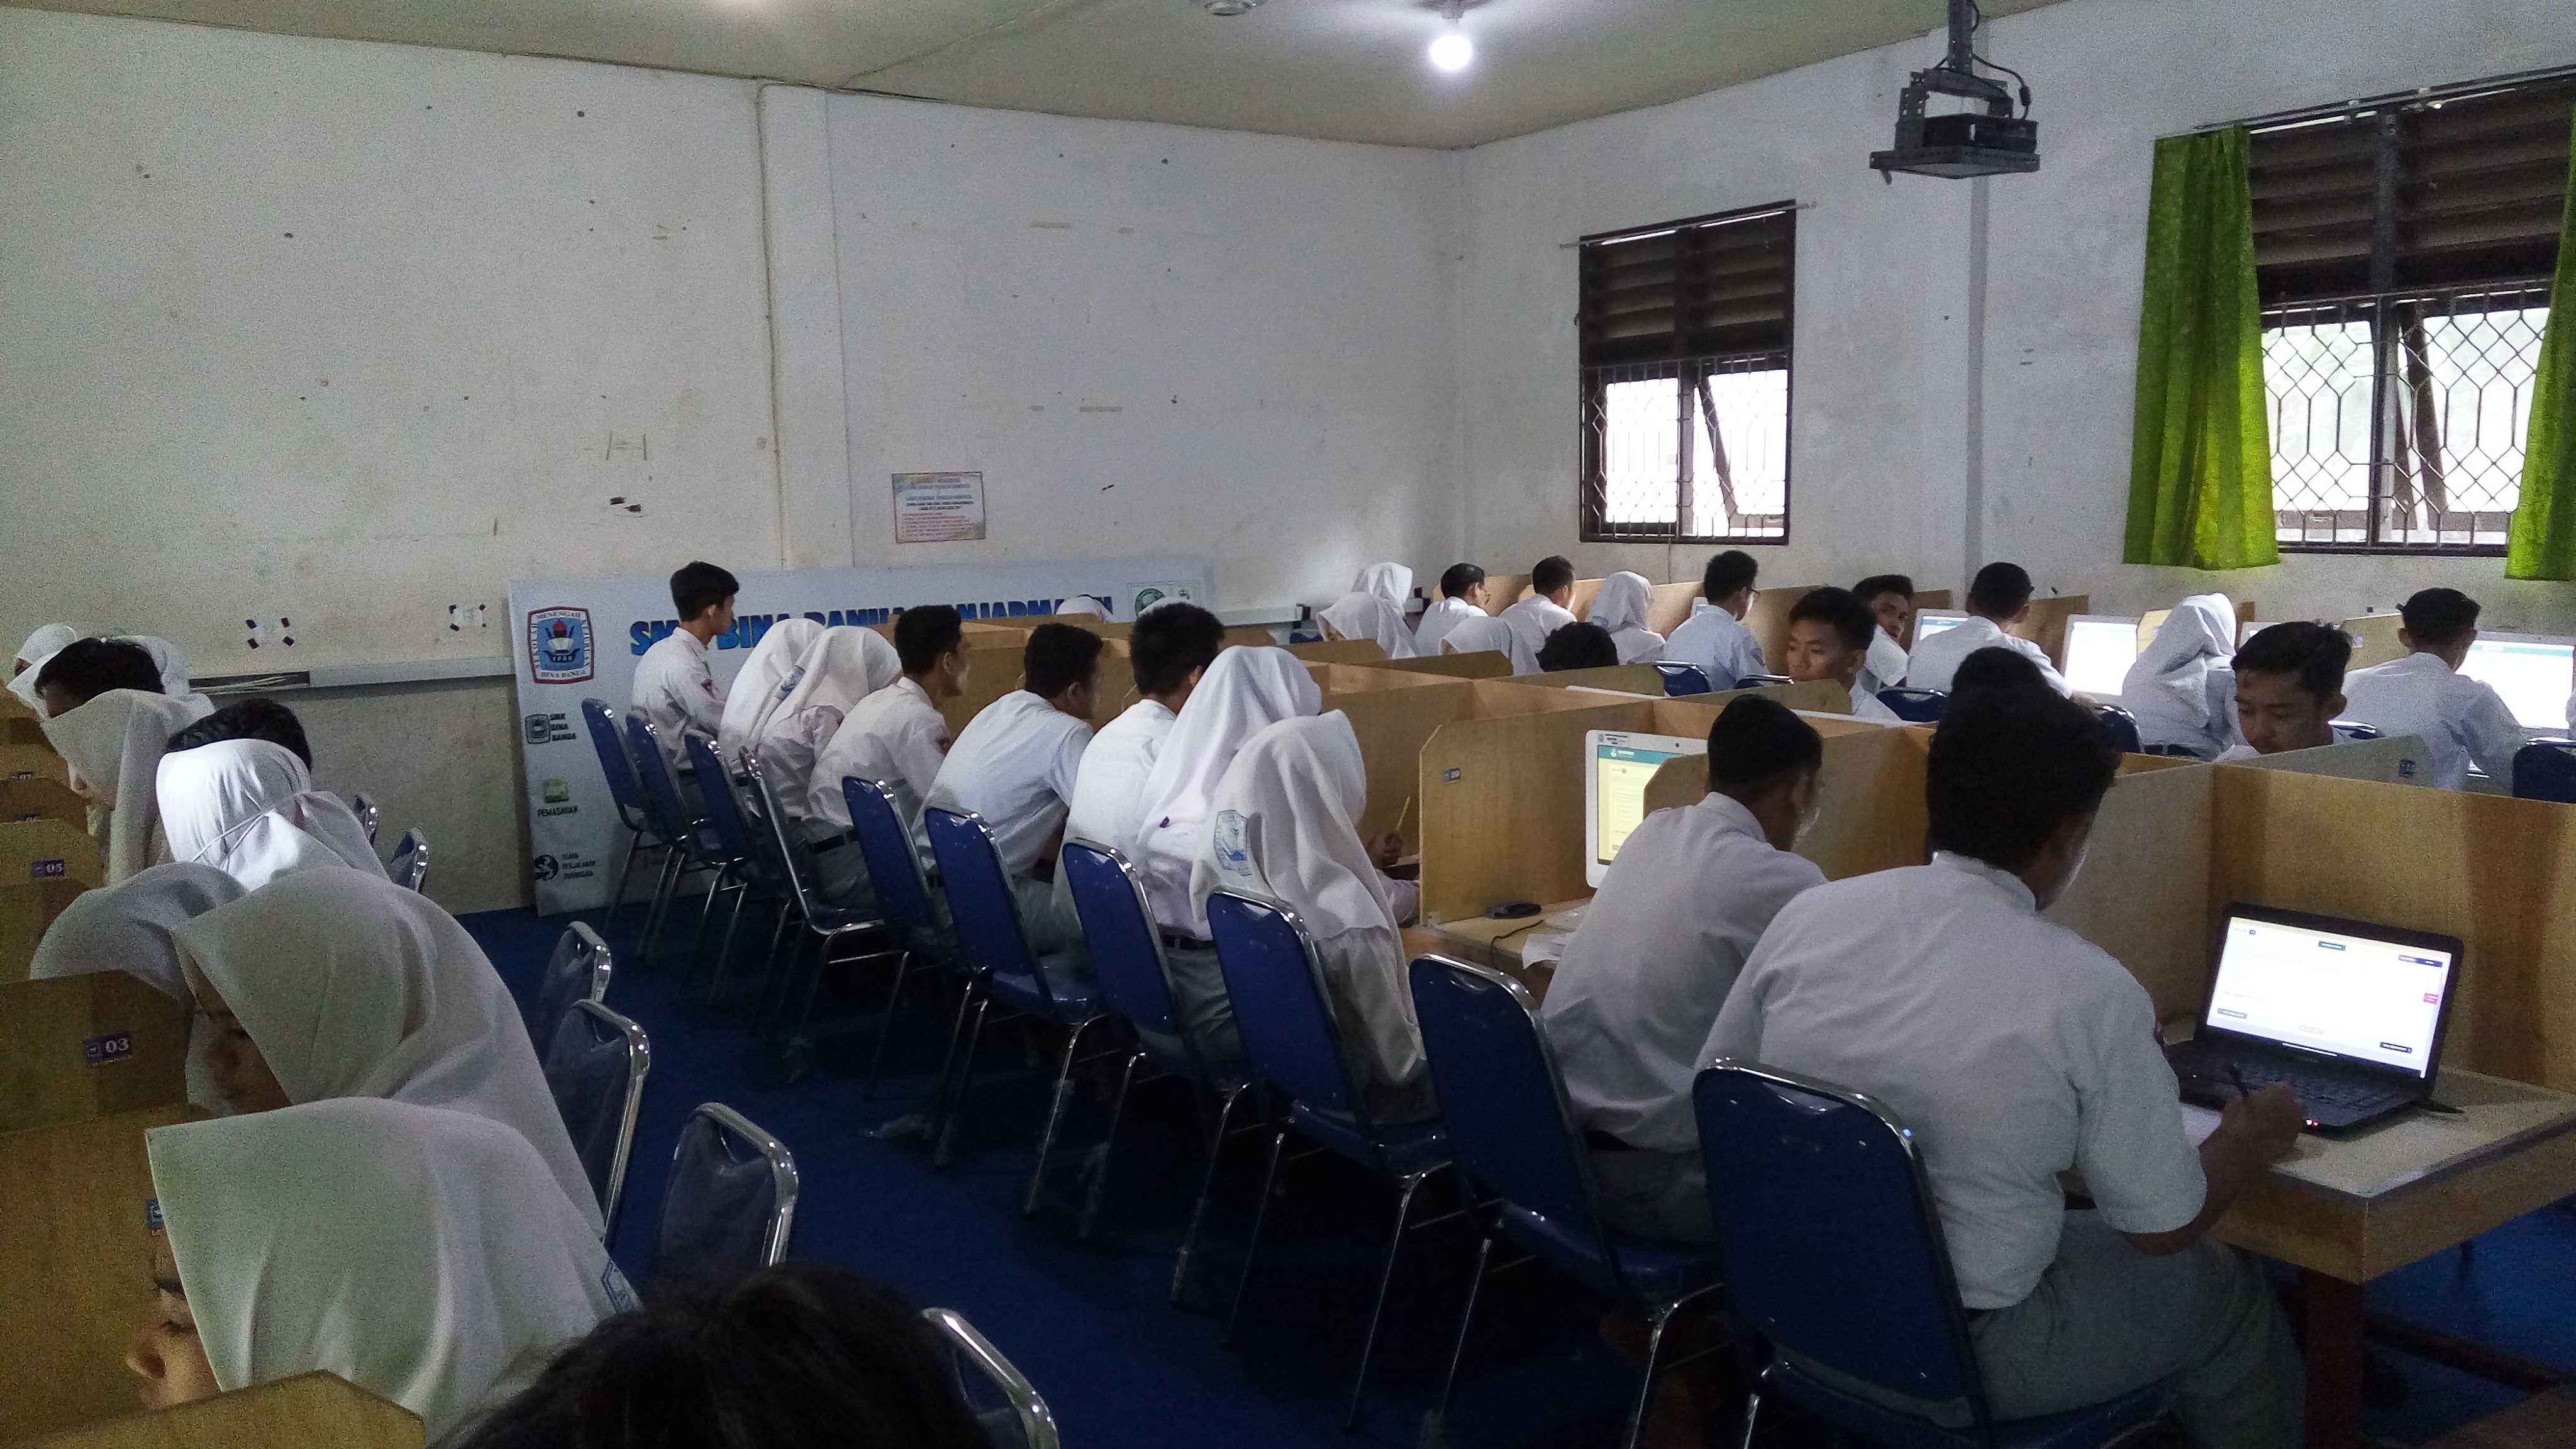 Pelaksanaan UNBK Tingkat SMK Tahun 2018 Di SMK Bina Banua Banjarmasin